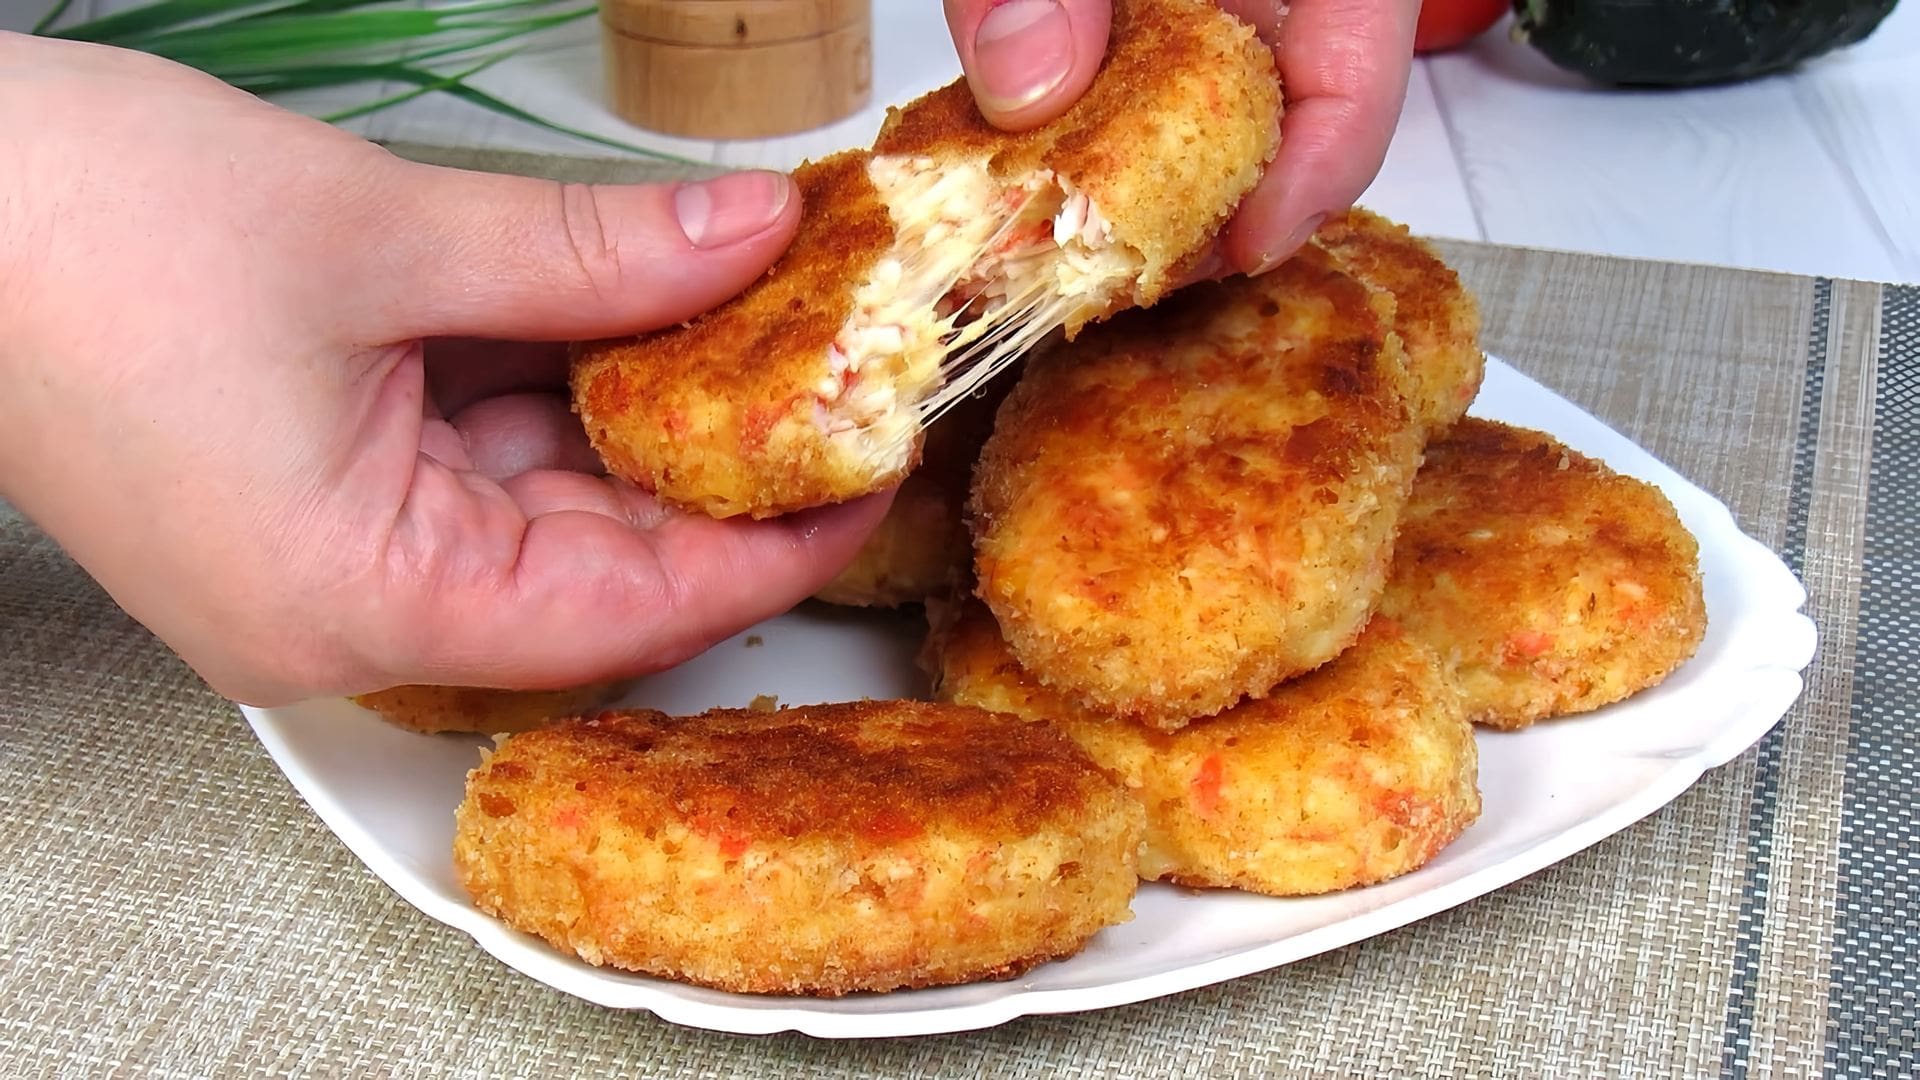 В этом видео демонстрируется рецепт приготовления котлет из крабовых палочек с сыром